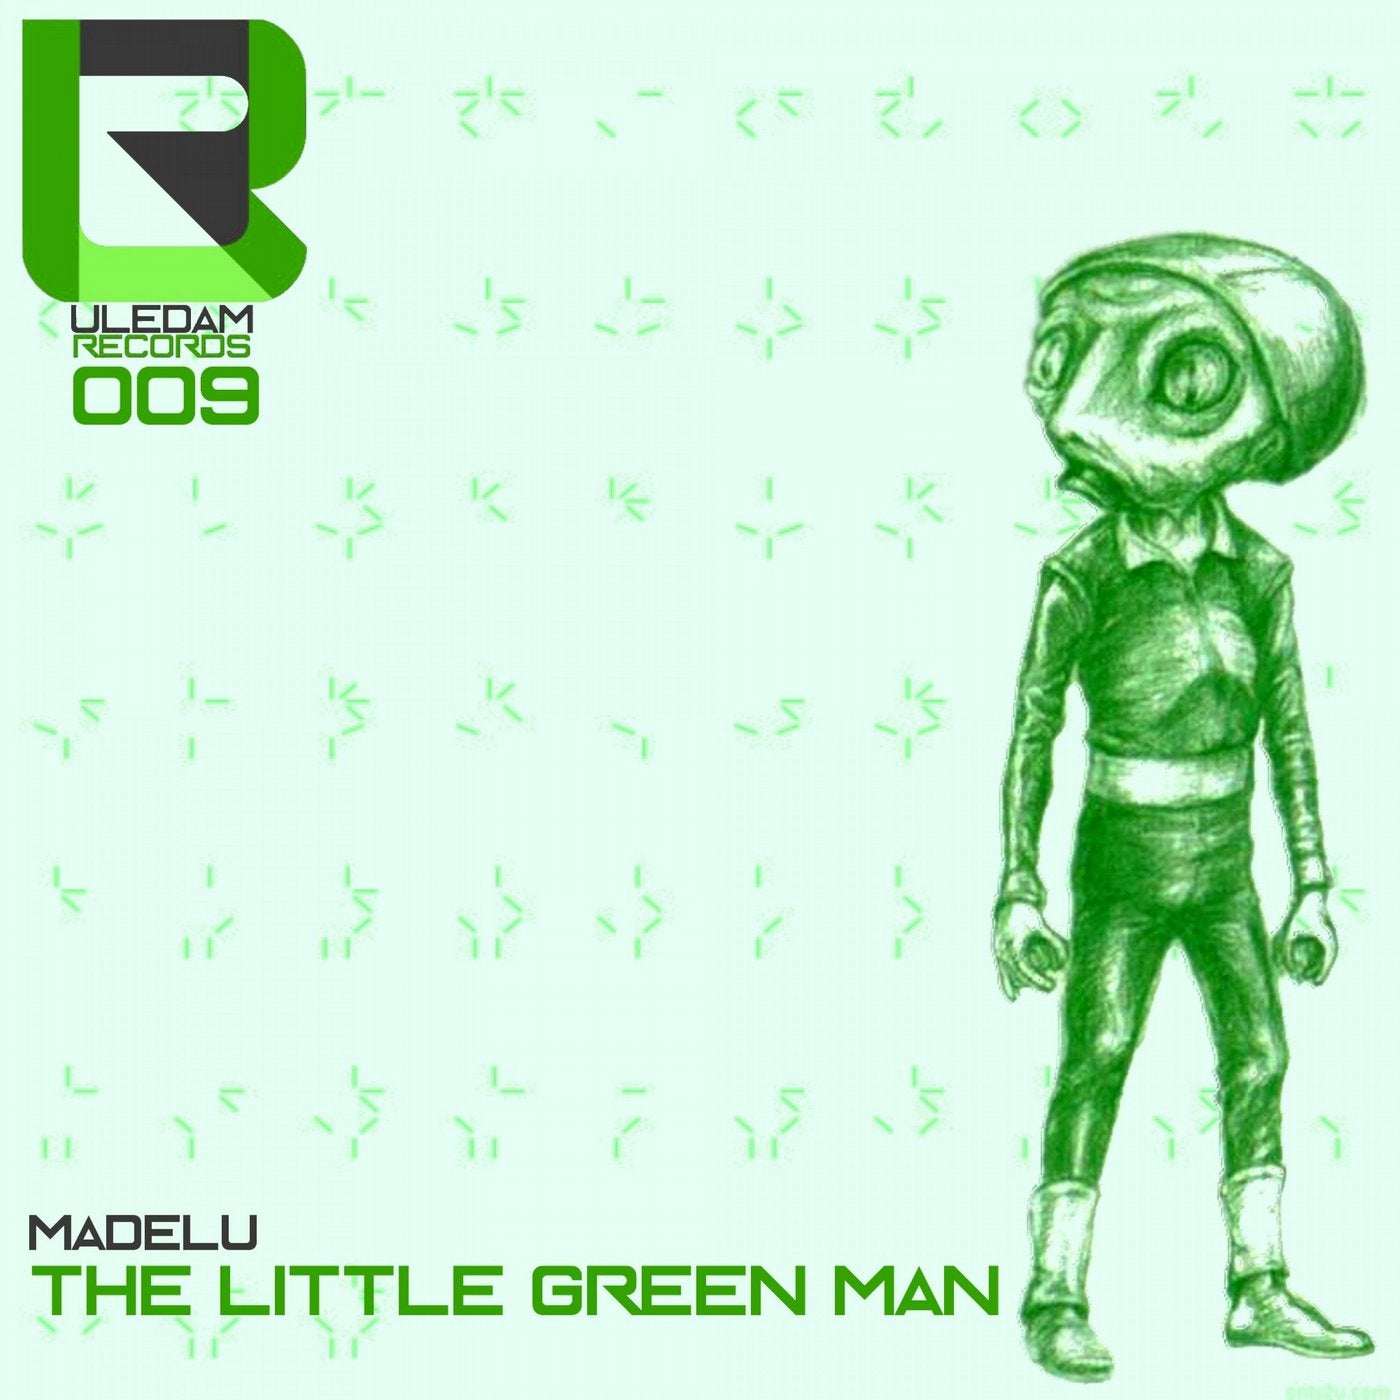 The Little Green Man